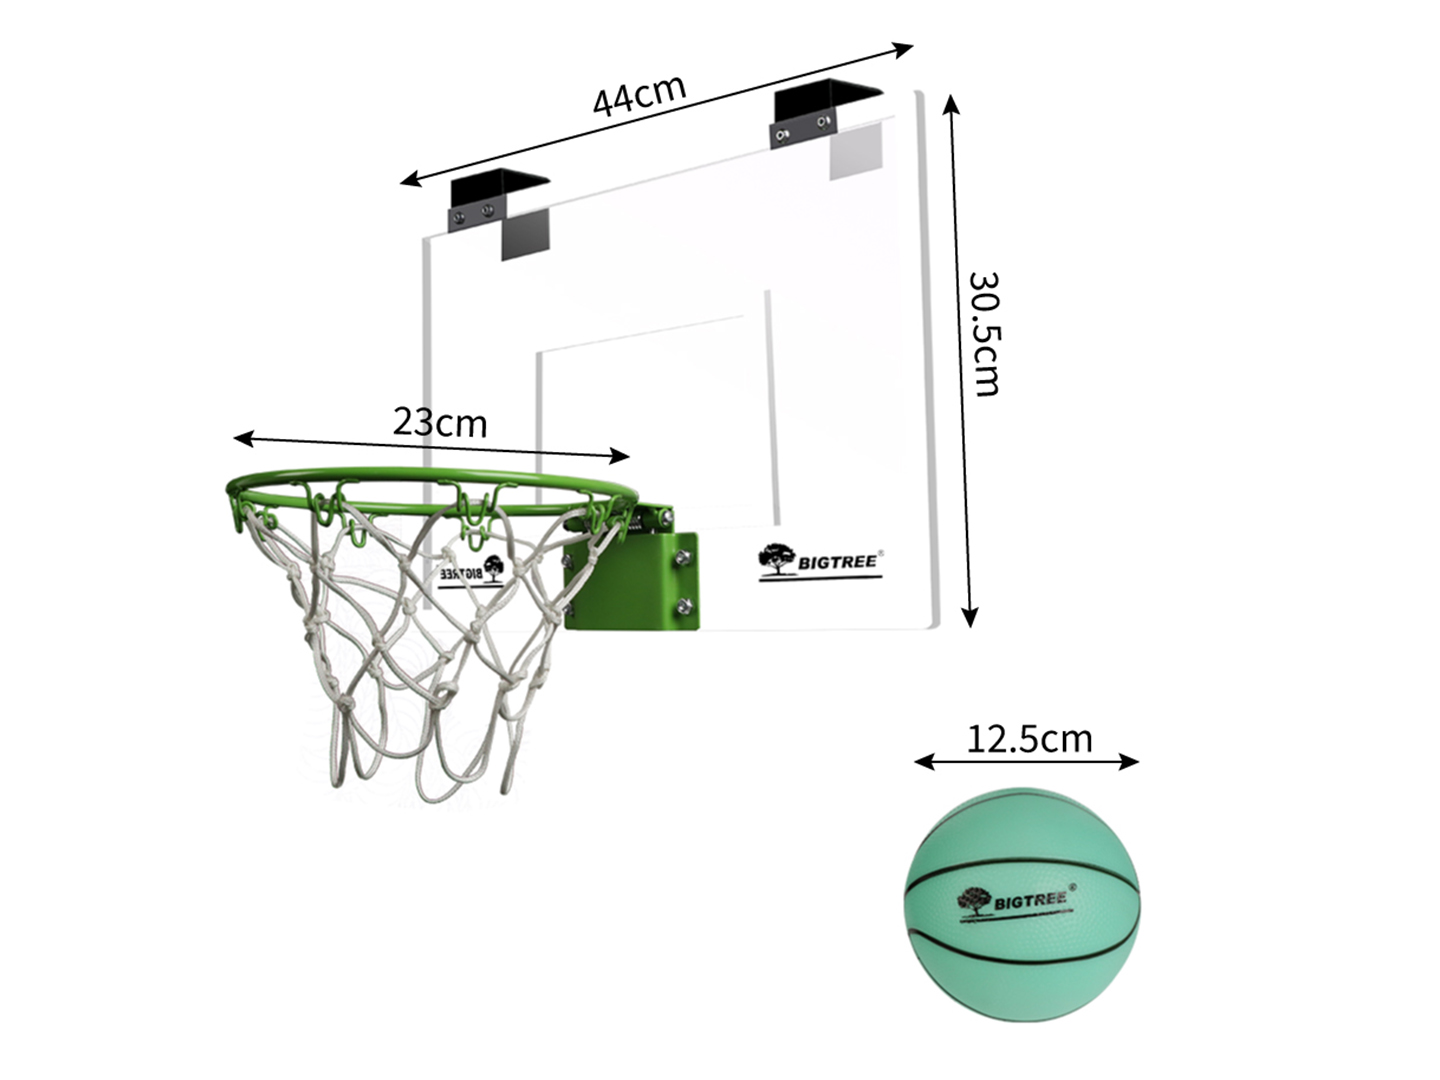 Basket ball Board---€22.12